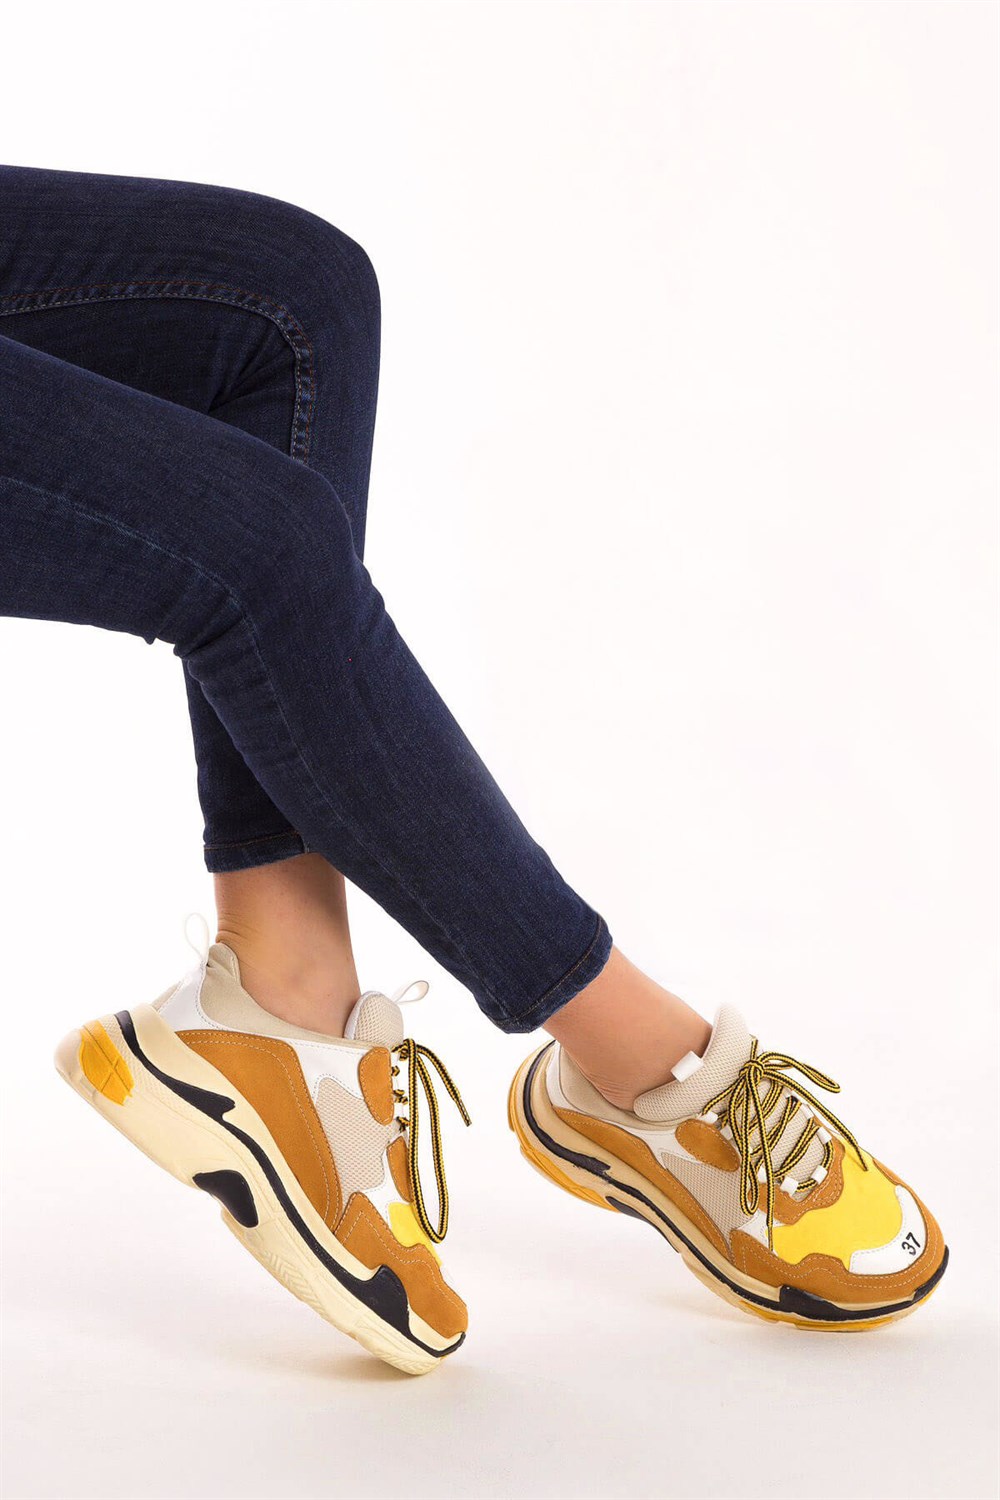 Fox Shoes Hardal/Beyaz/Sarı Kadın Sneakers D592410102